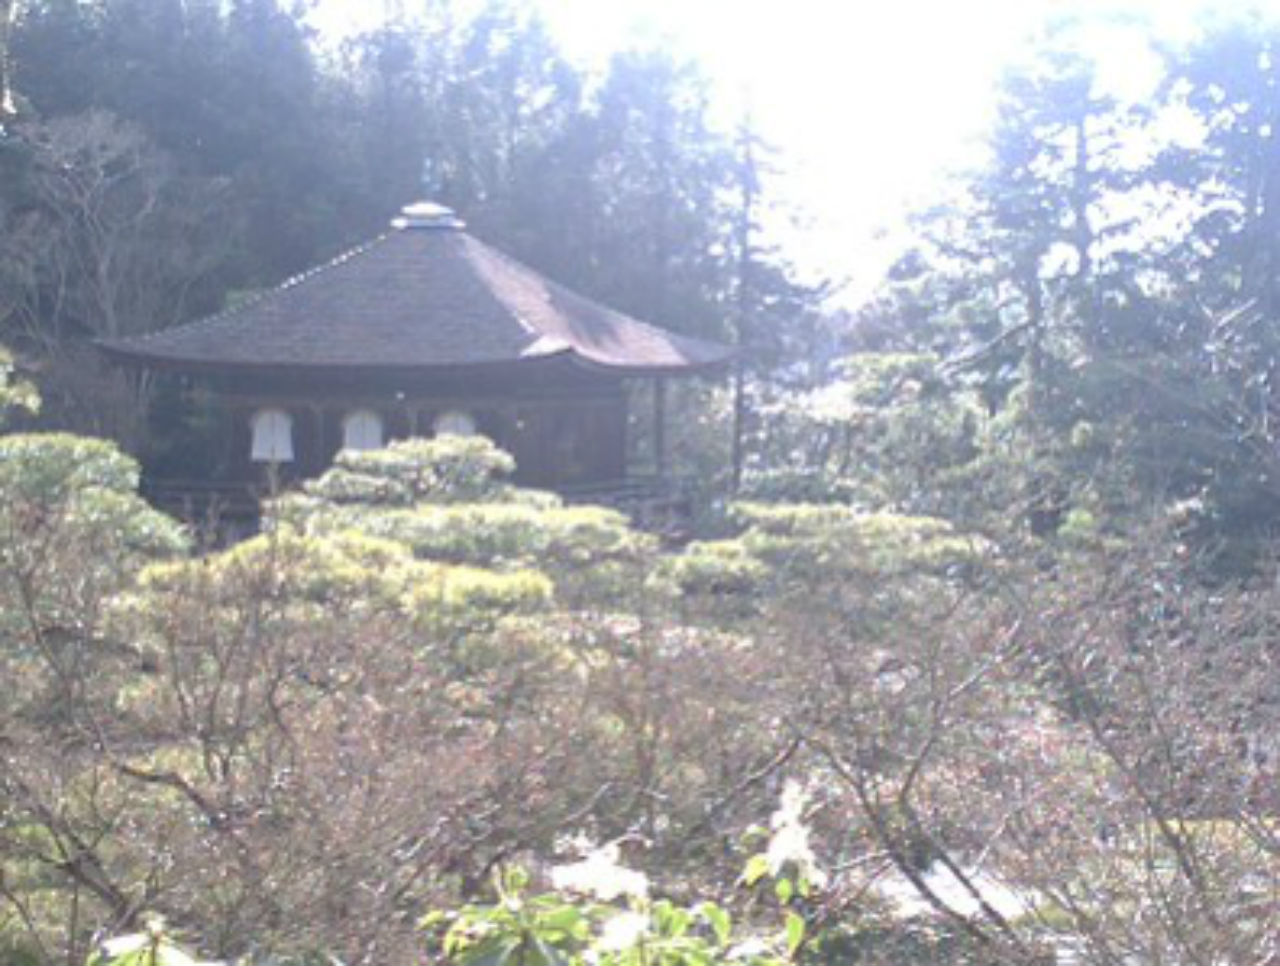 銀閣寺